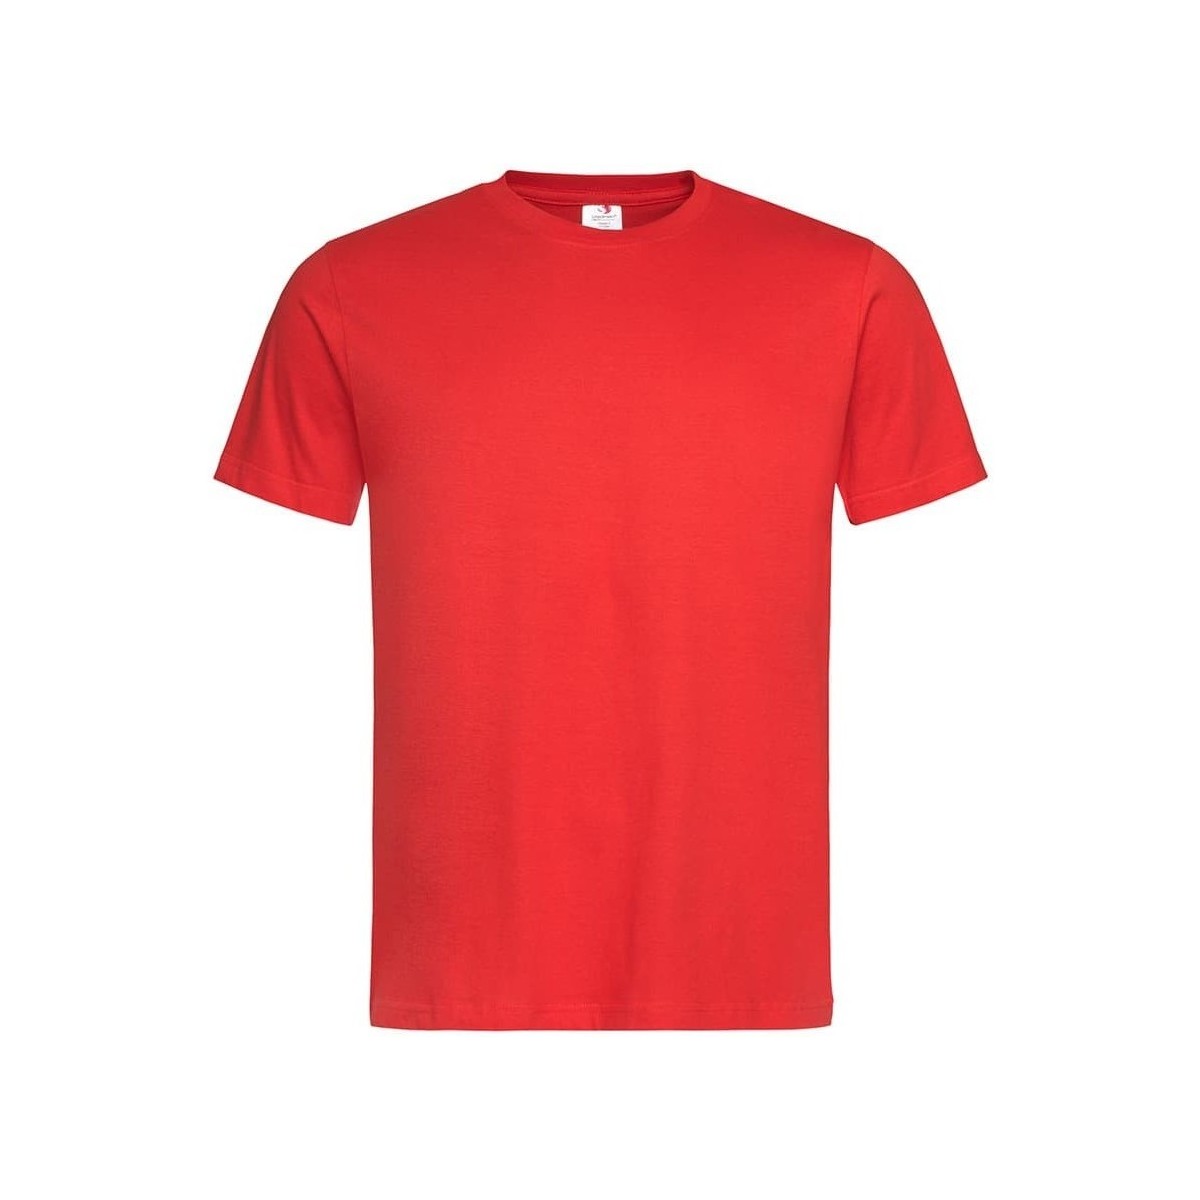 textil Camisetas manga larga Stedman Classic Rojo